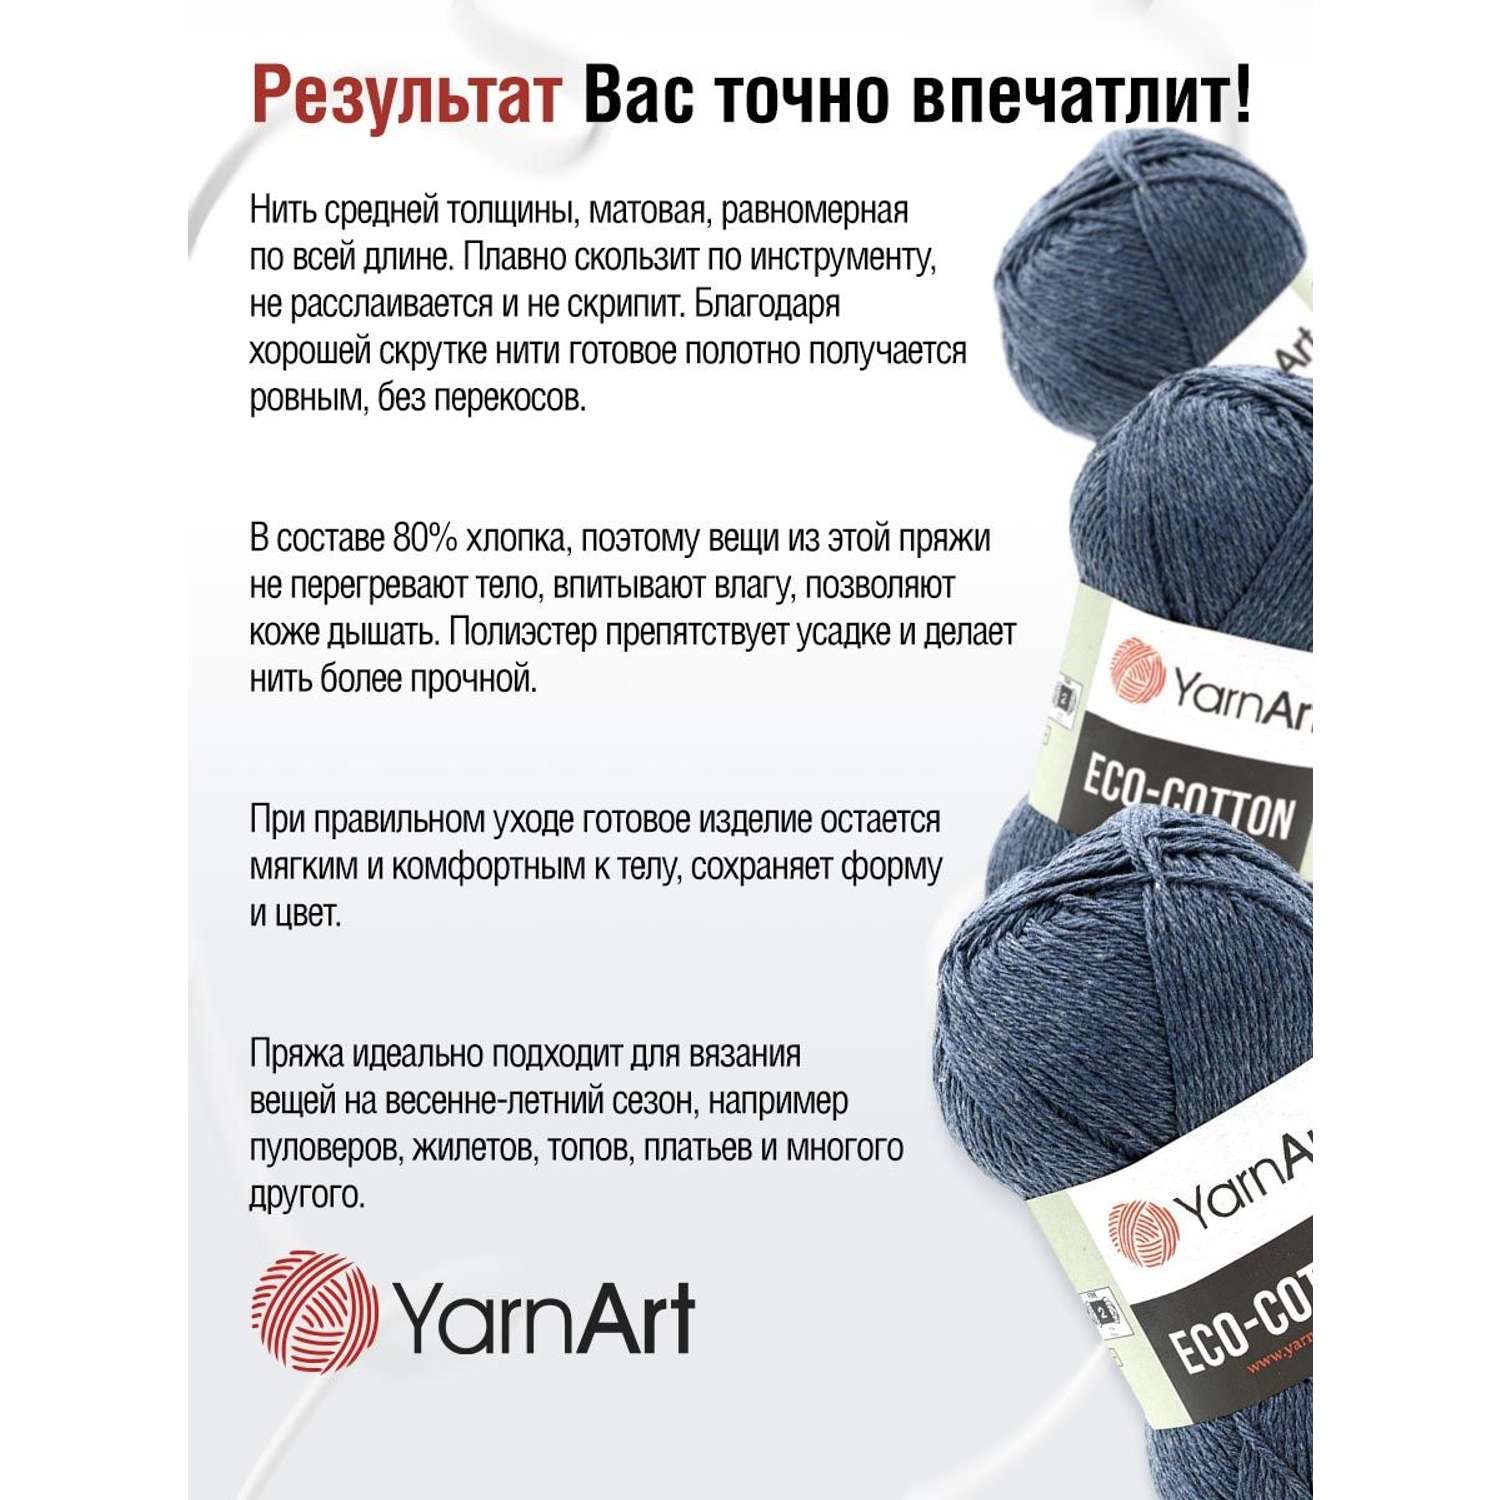 Пряжа YarnArt Eco Cotton комфортная для летних вещей 100 г 220 м 773 джинс 5 мотков - фото 4